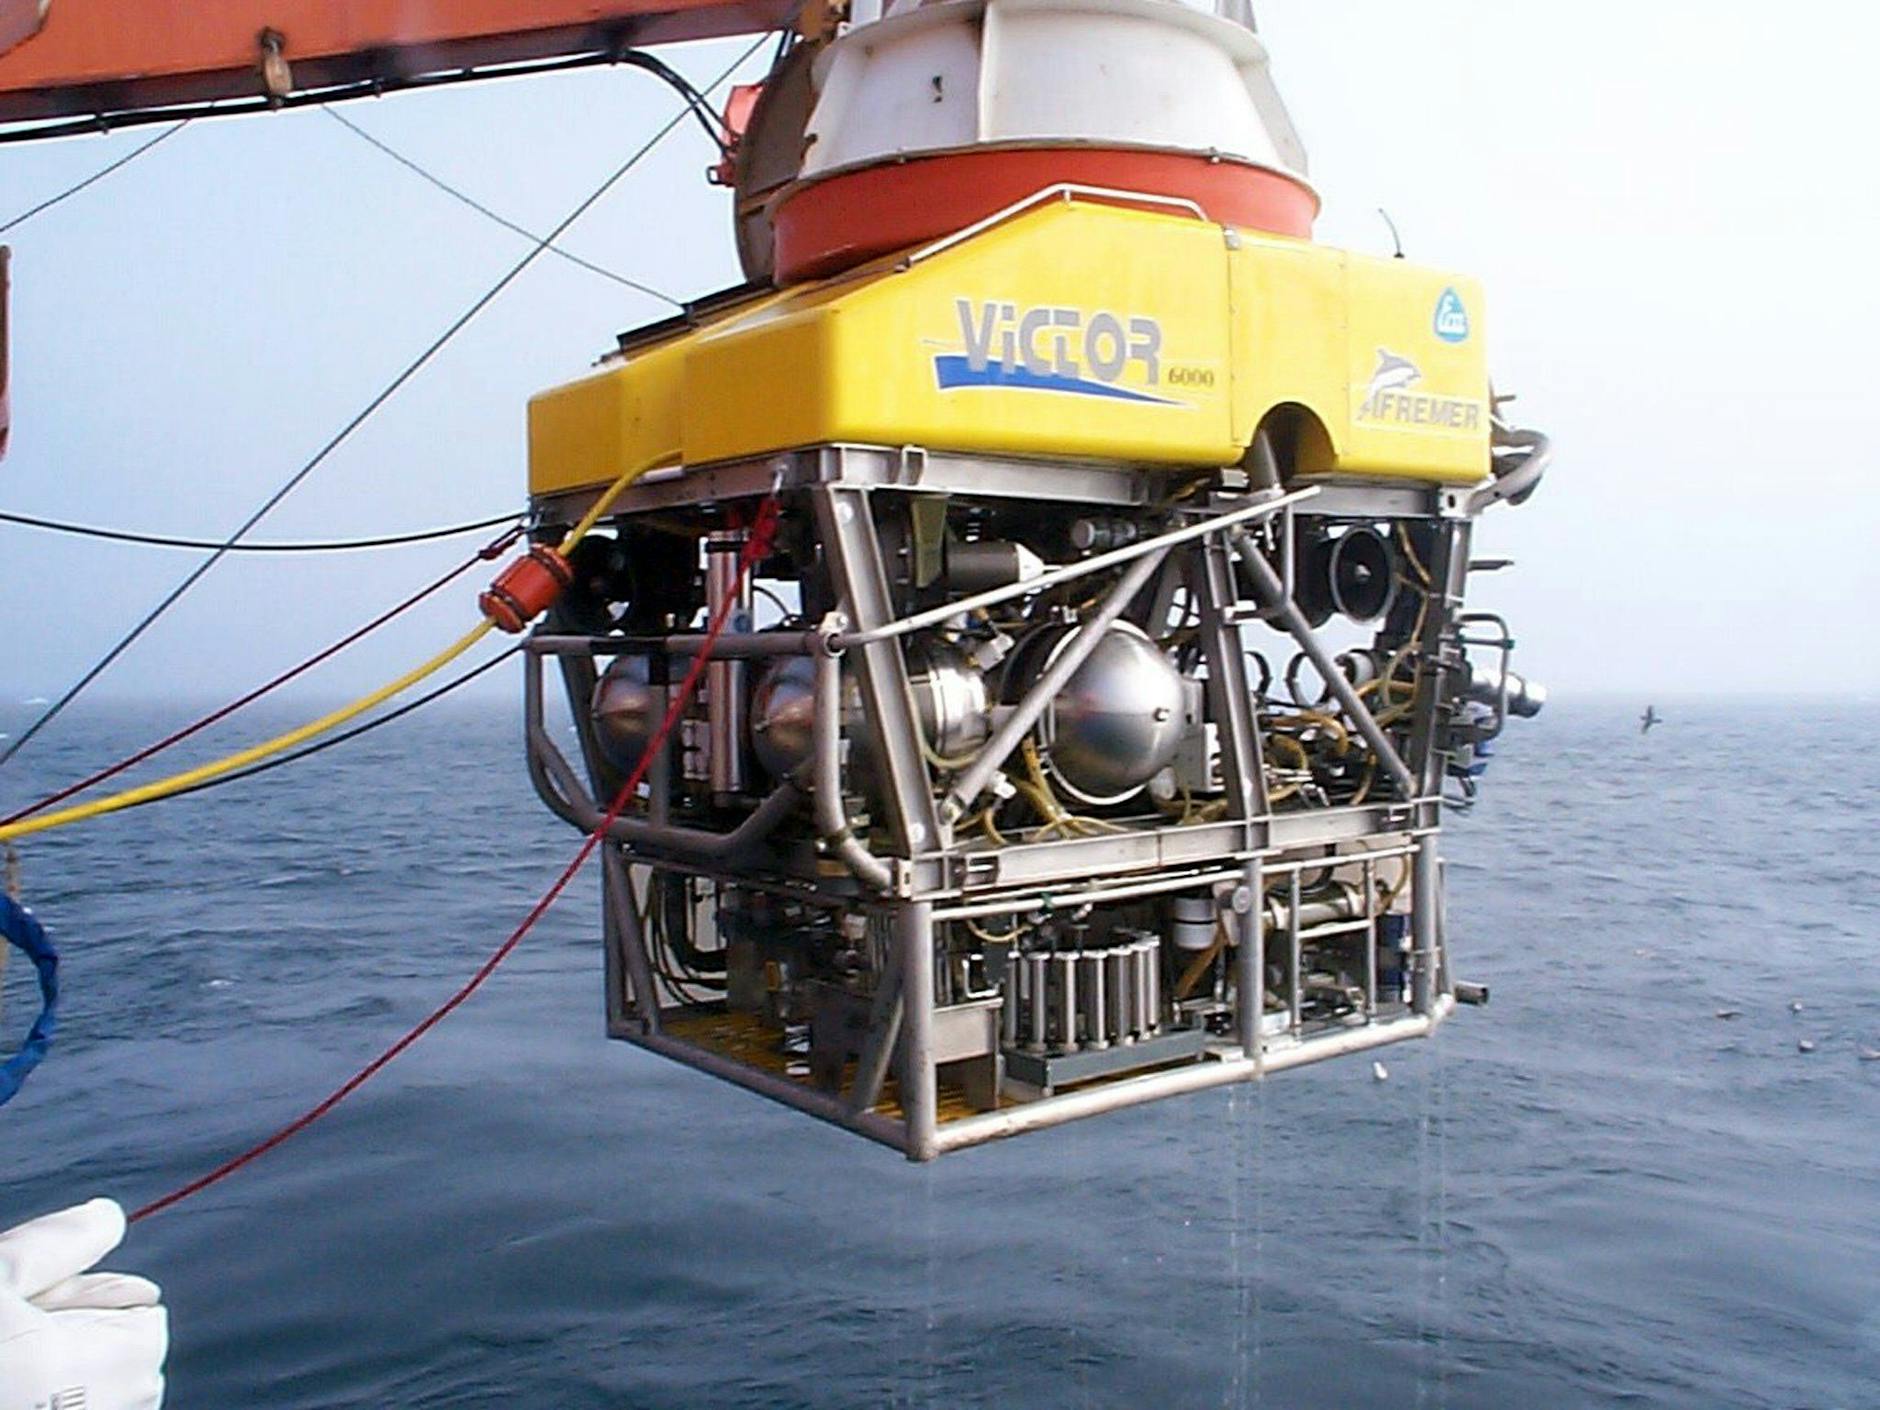 Le véhicule hauturier français télécommandé « Victor 6000 » (photo d'archive non datée) est utilisé dans la recherche du « Titan ».  Il a établi un record de plongée en plongeant pendant 19 heures dans 5 552 mètres d'eau entre le Groenland et le Svalbard.  L'Institut Alfred Wegener (AWI) pour la recherche polaire et marine de Bremerhaven a déclaré que jamais auparavant un tel appareil n'avait fonctionné en continu aussi longtemps à cette profondeur d'eau.